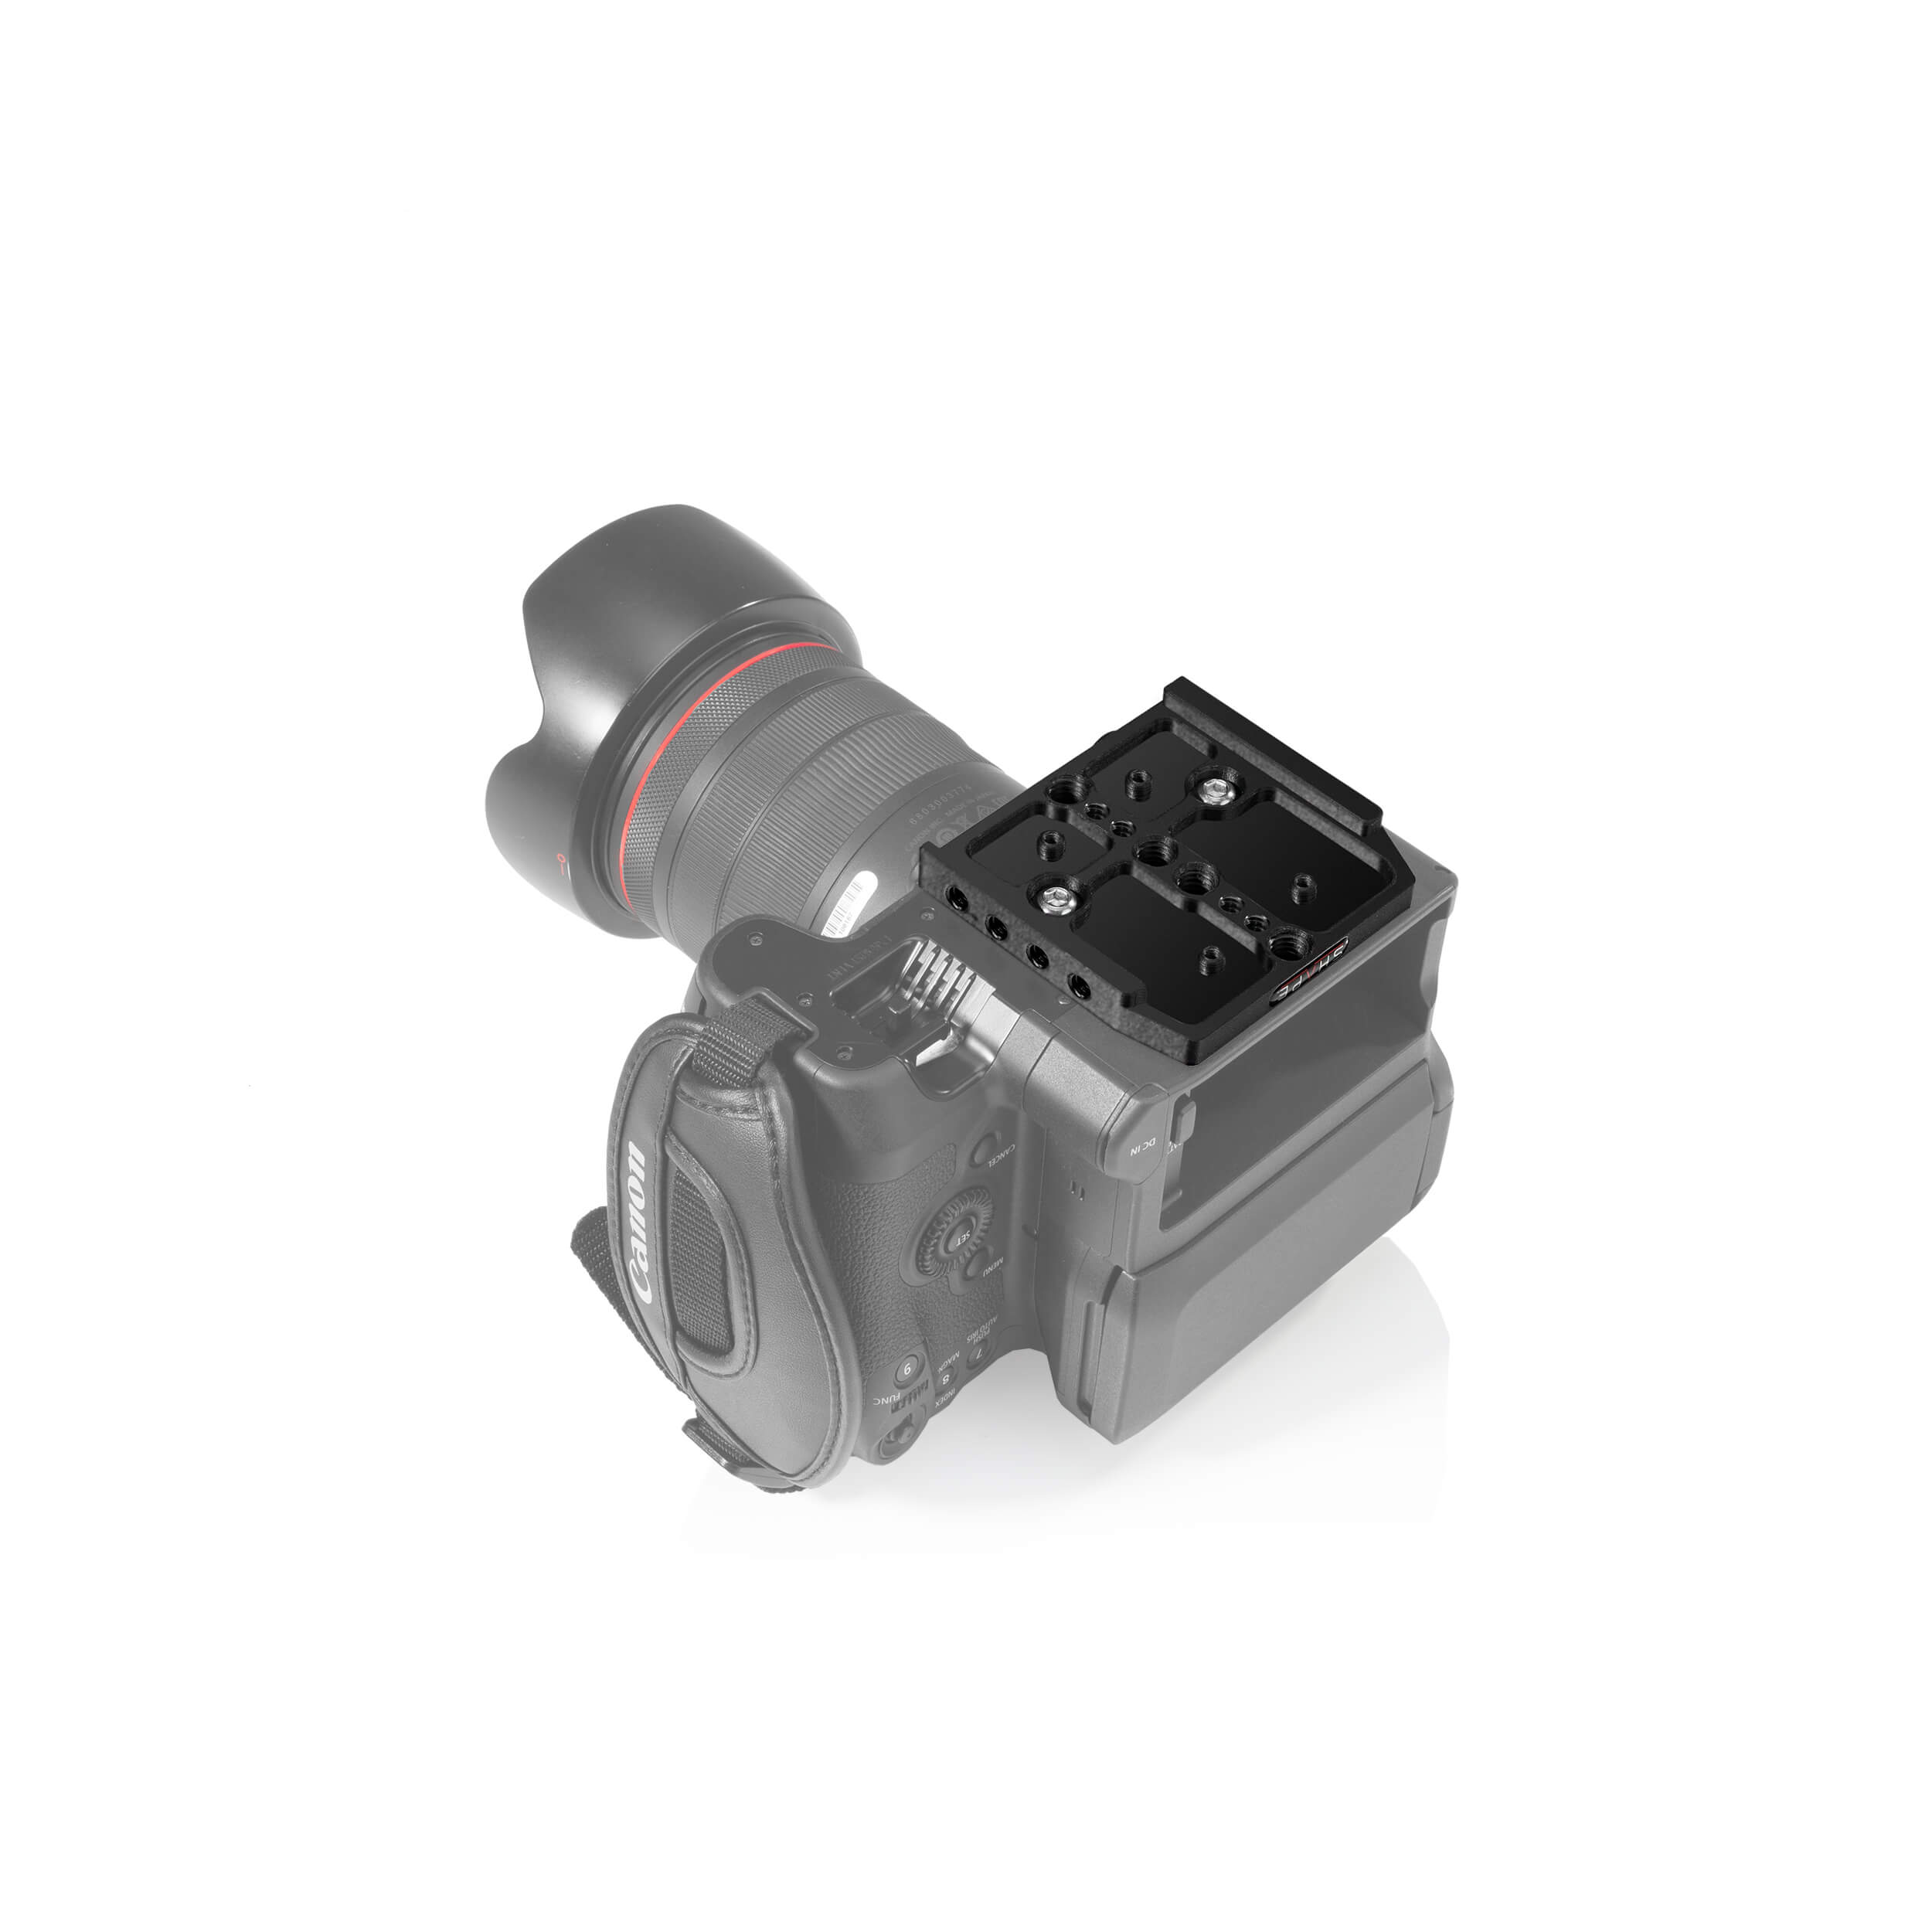 Forme Canon C70 CAME CAME CAGE SHAPHER RIGHT AVEC BOX MATTE ET SUIVANT FOCUS